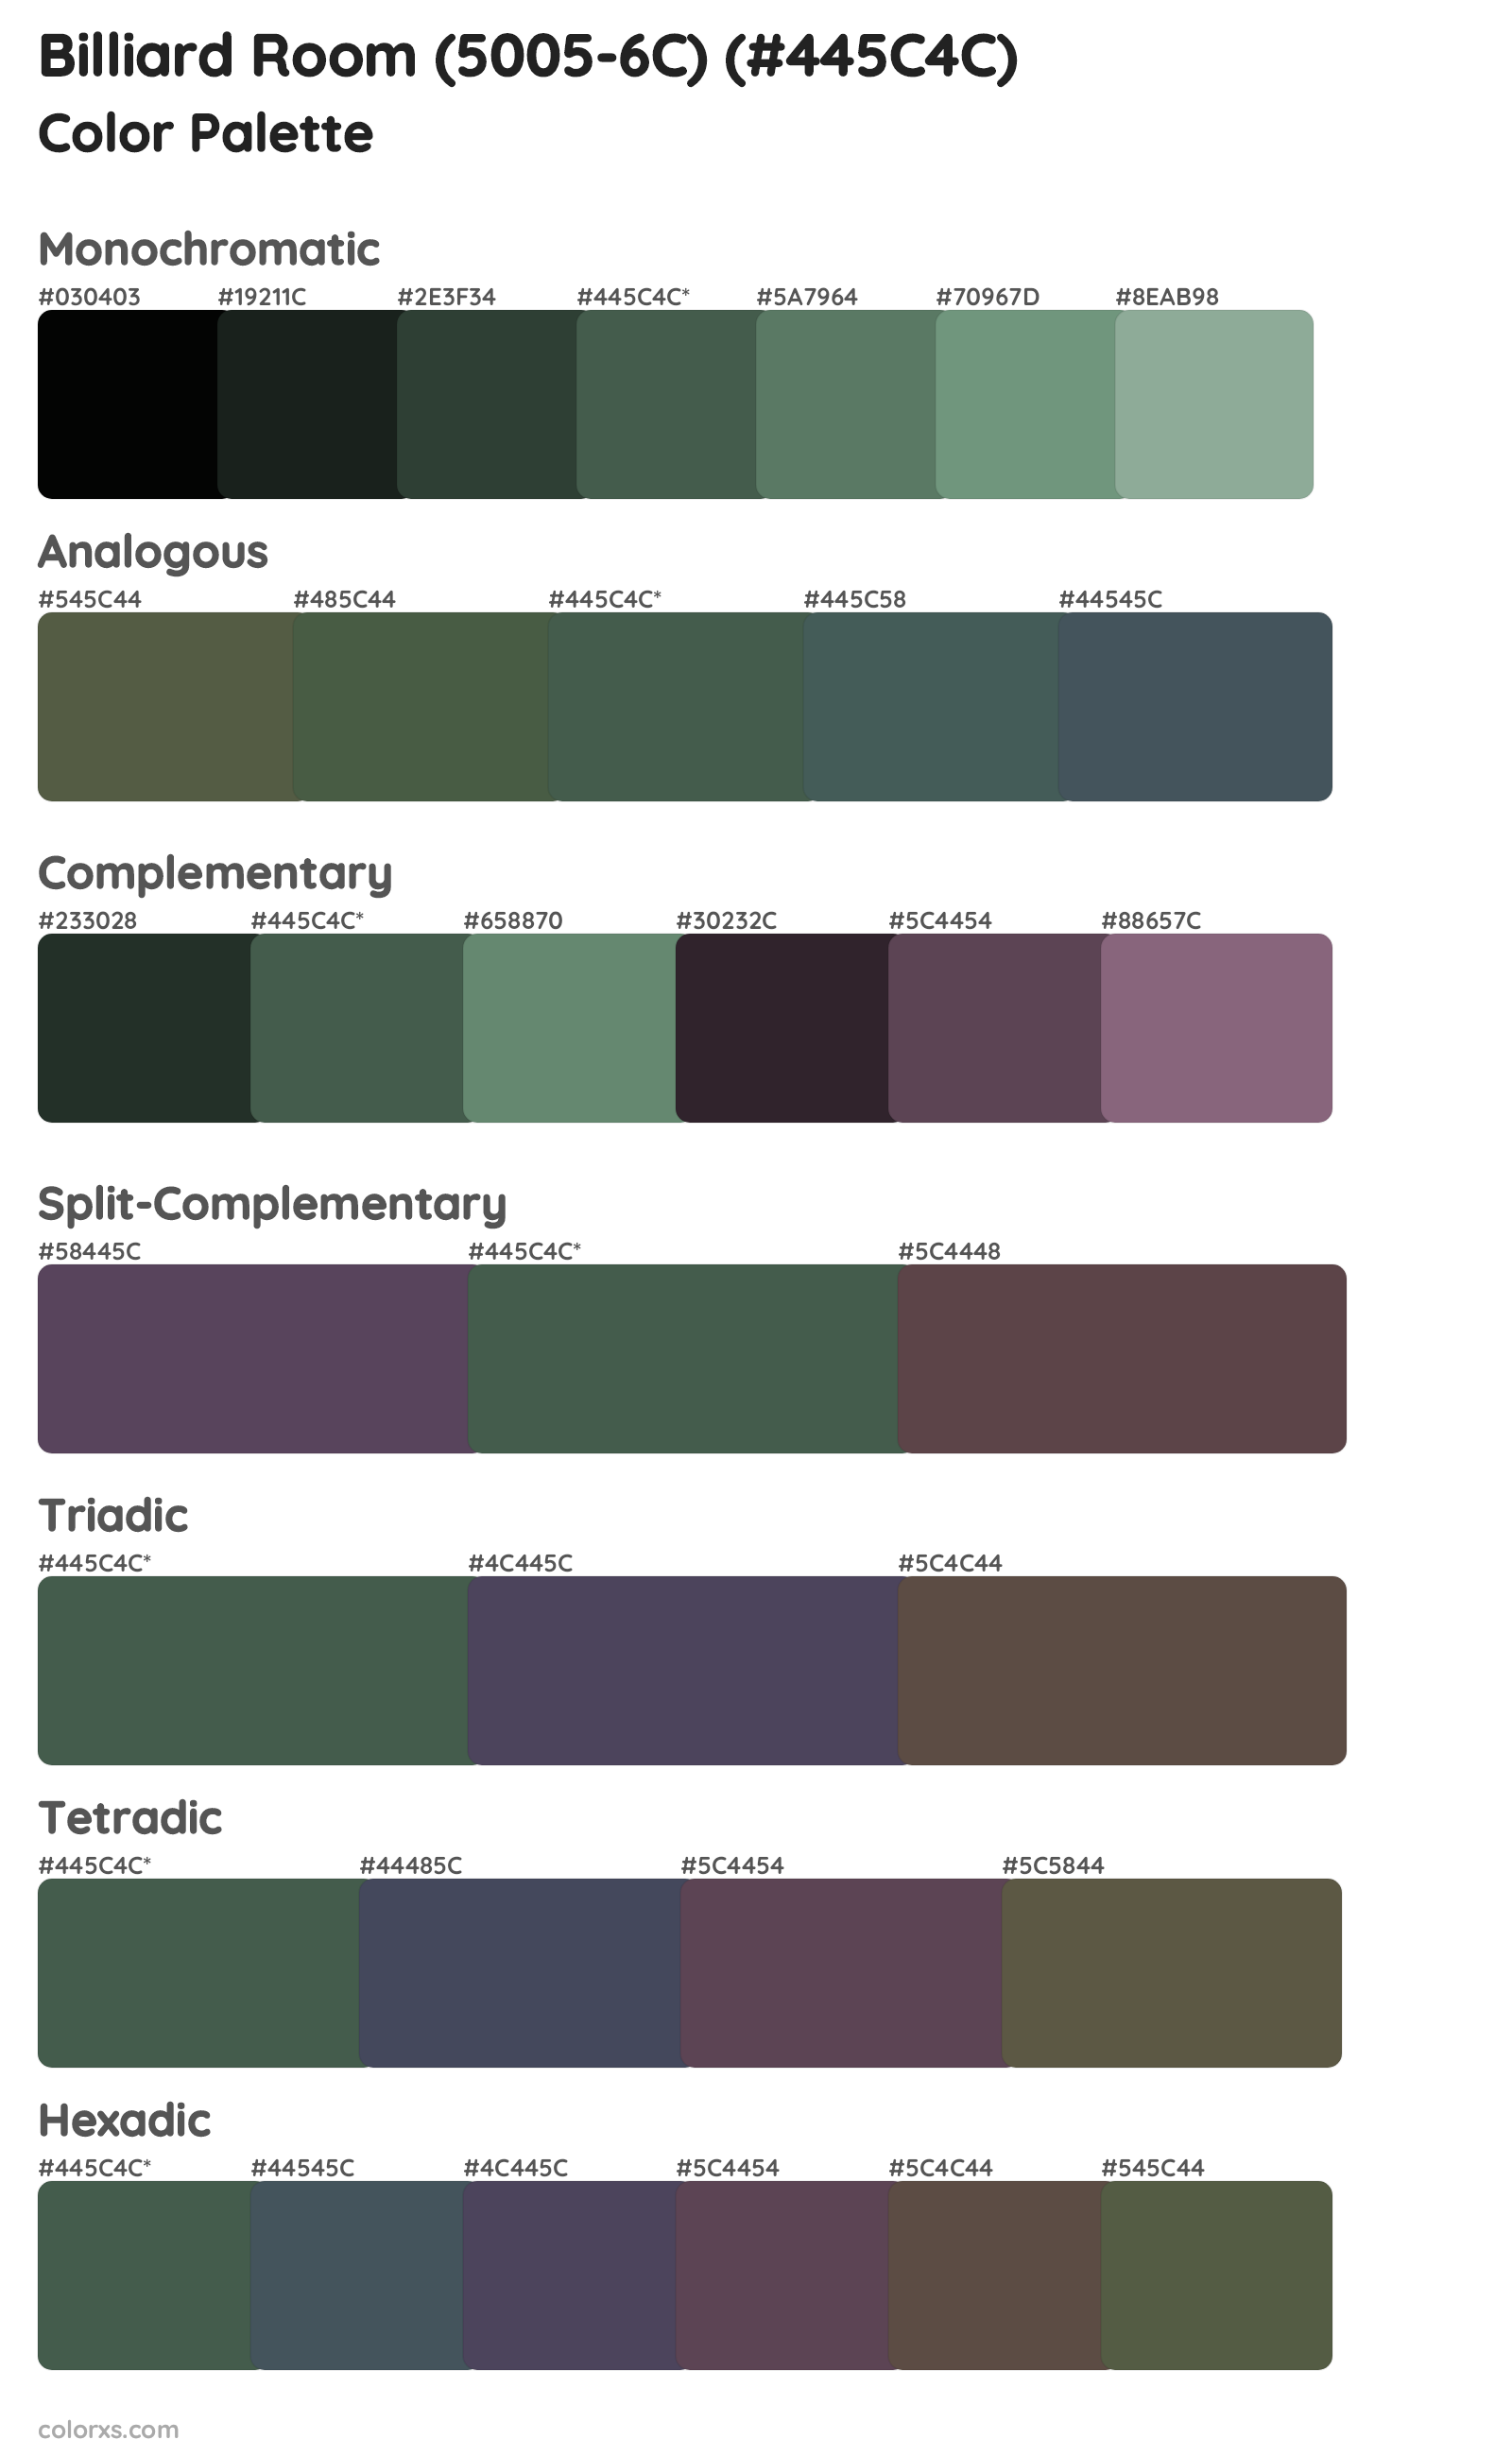 Billiard Room (5005-6C) Color Scheme Palettes